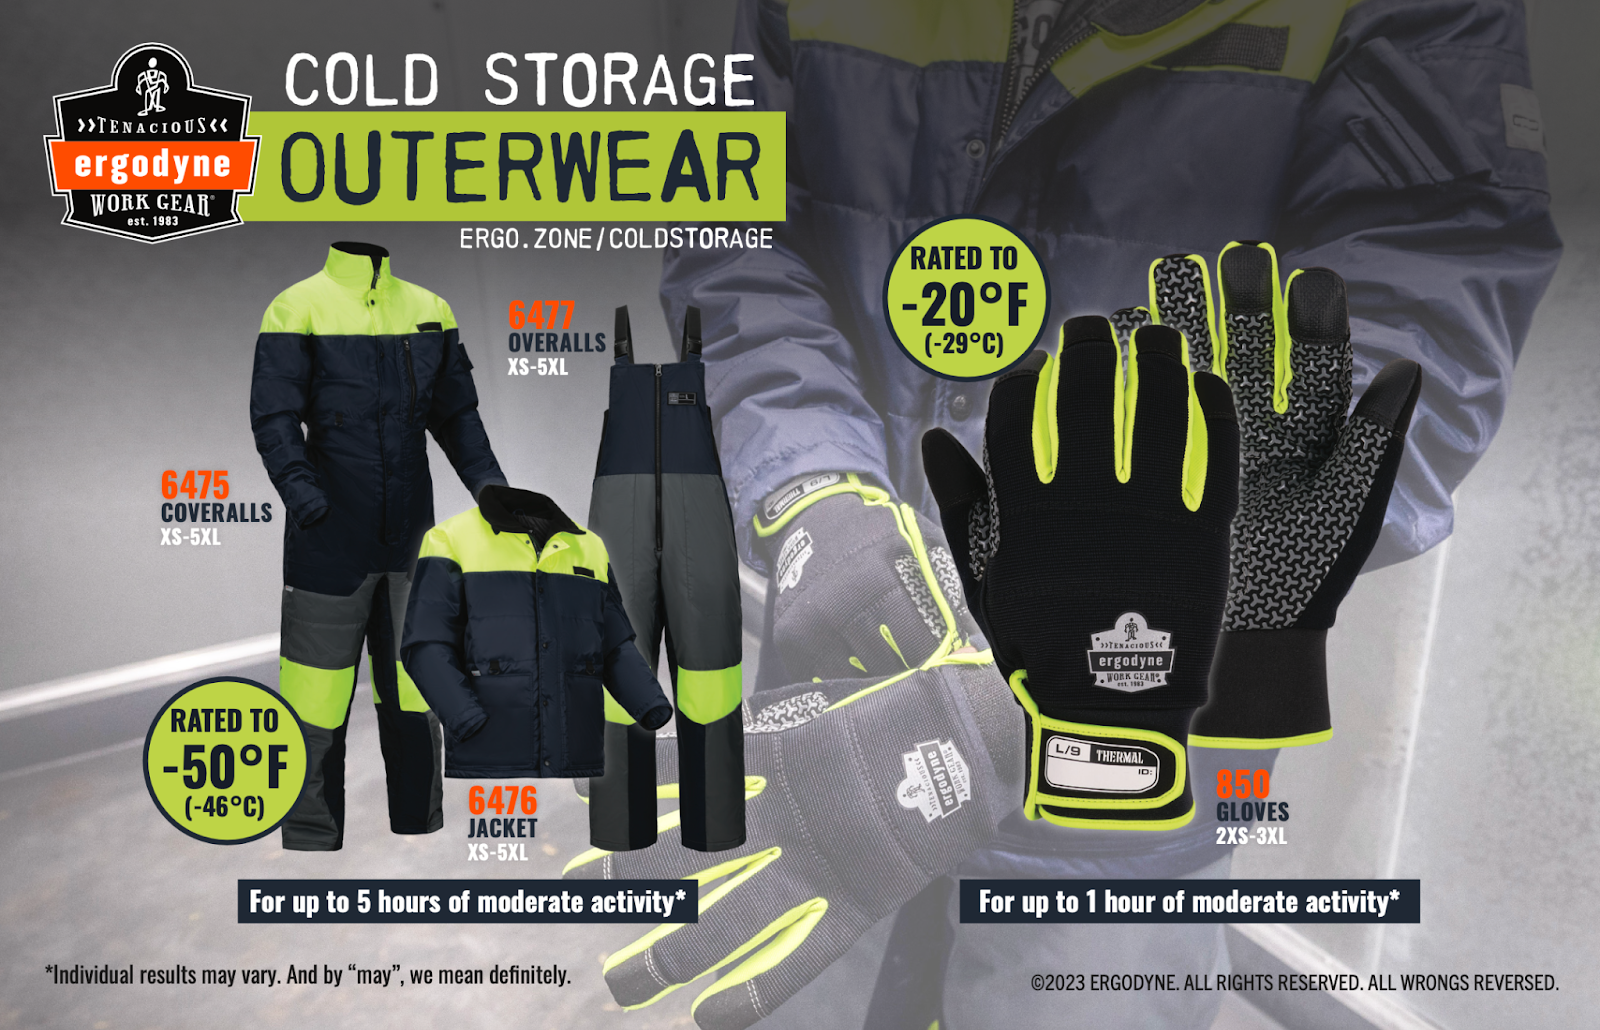 Ergodyne cold storage outerwear